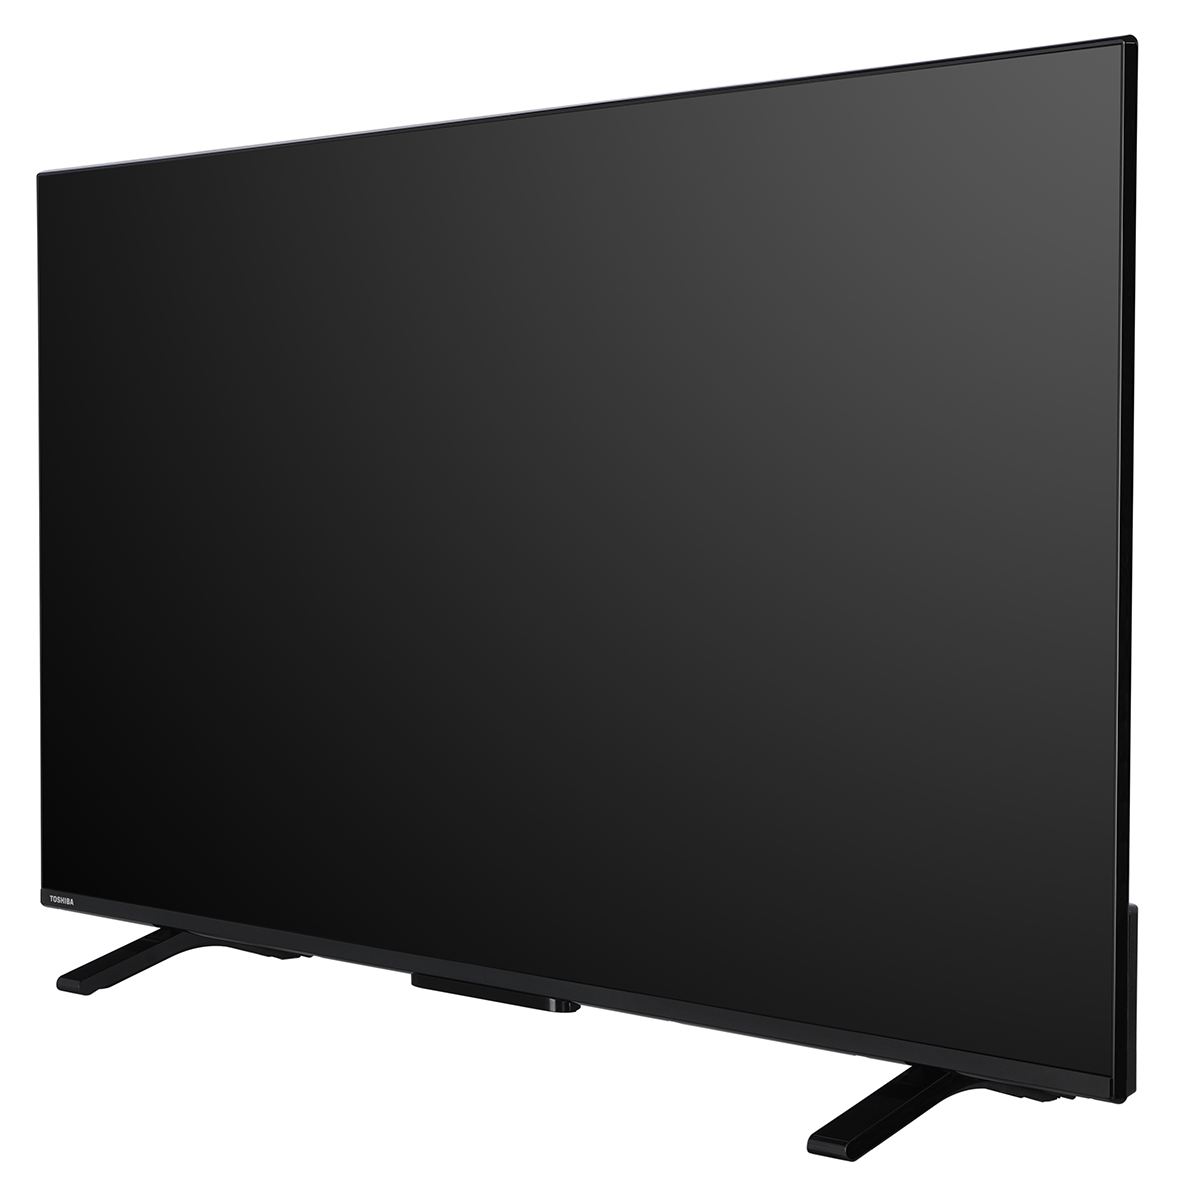 TV LED 50UA2363DG, UHD, Android slika proizvoda Front View 2 L